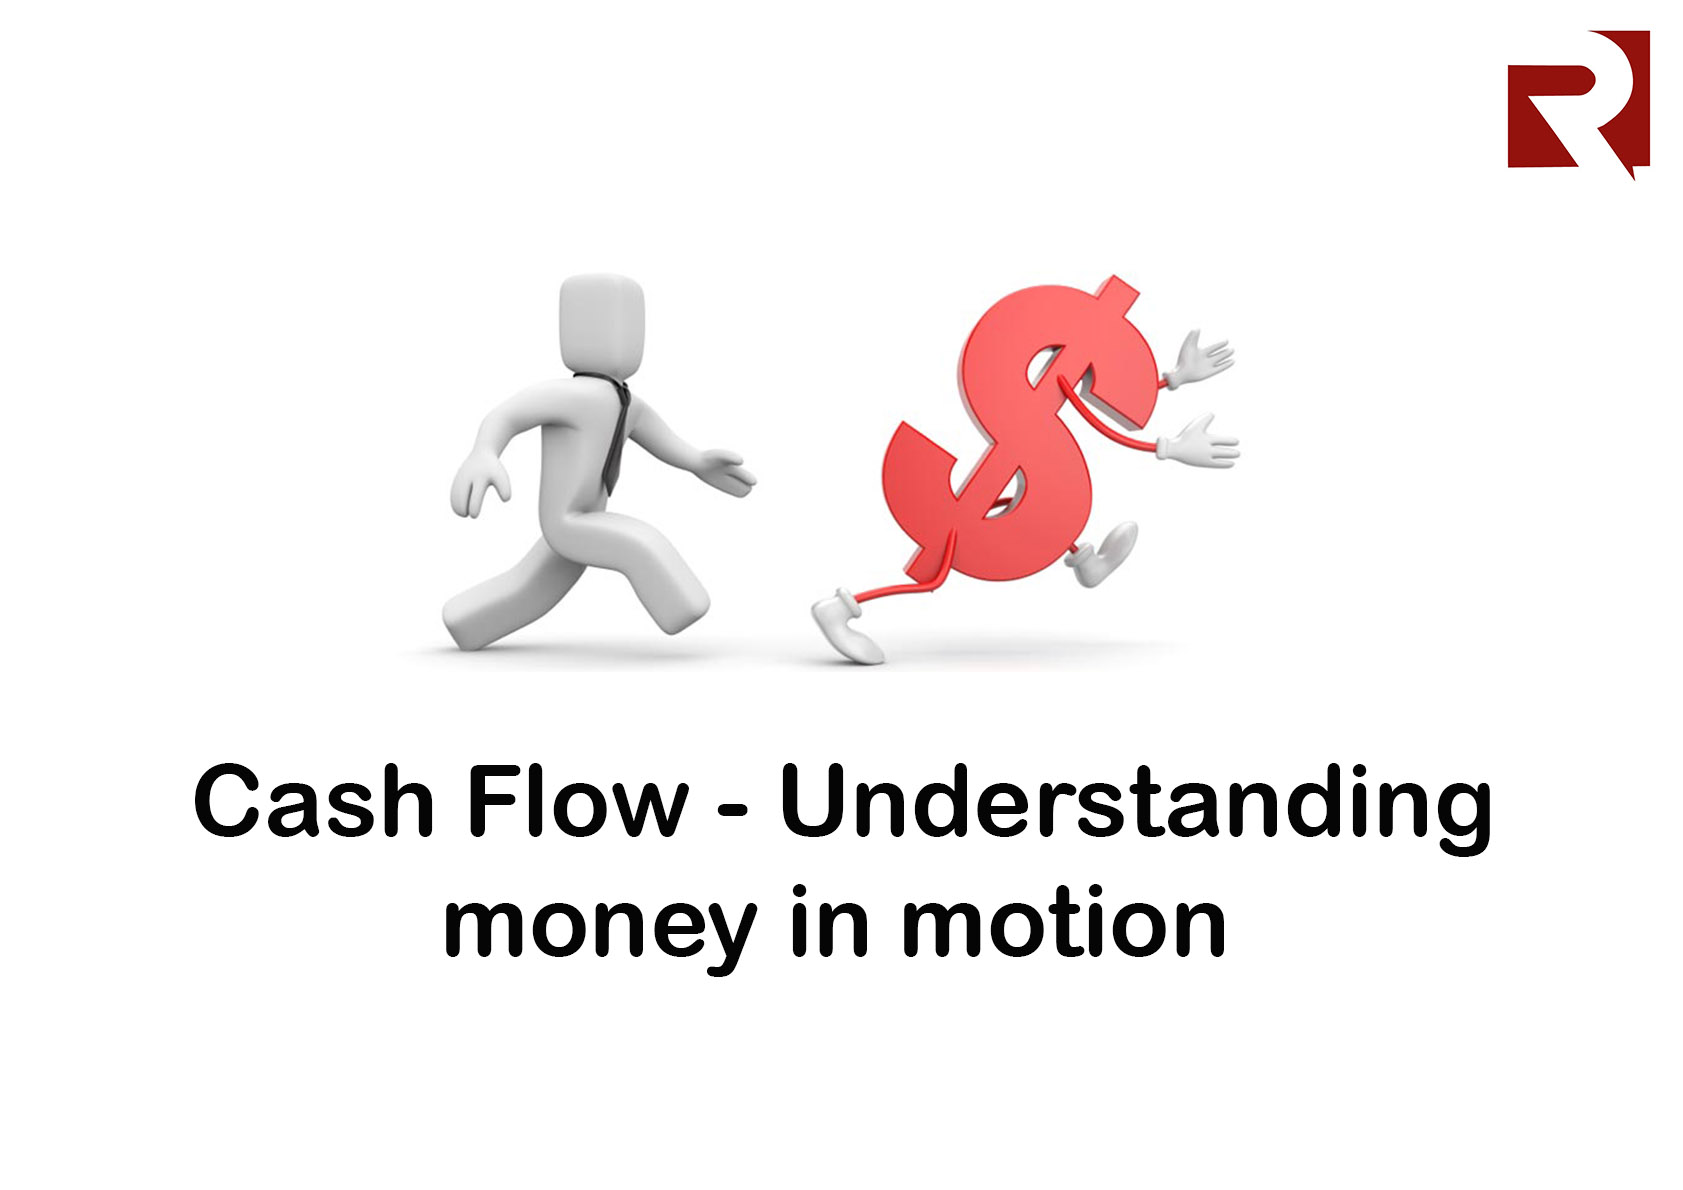 Cash Flow - understanding money in motion